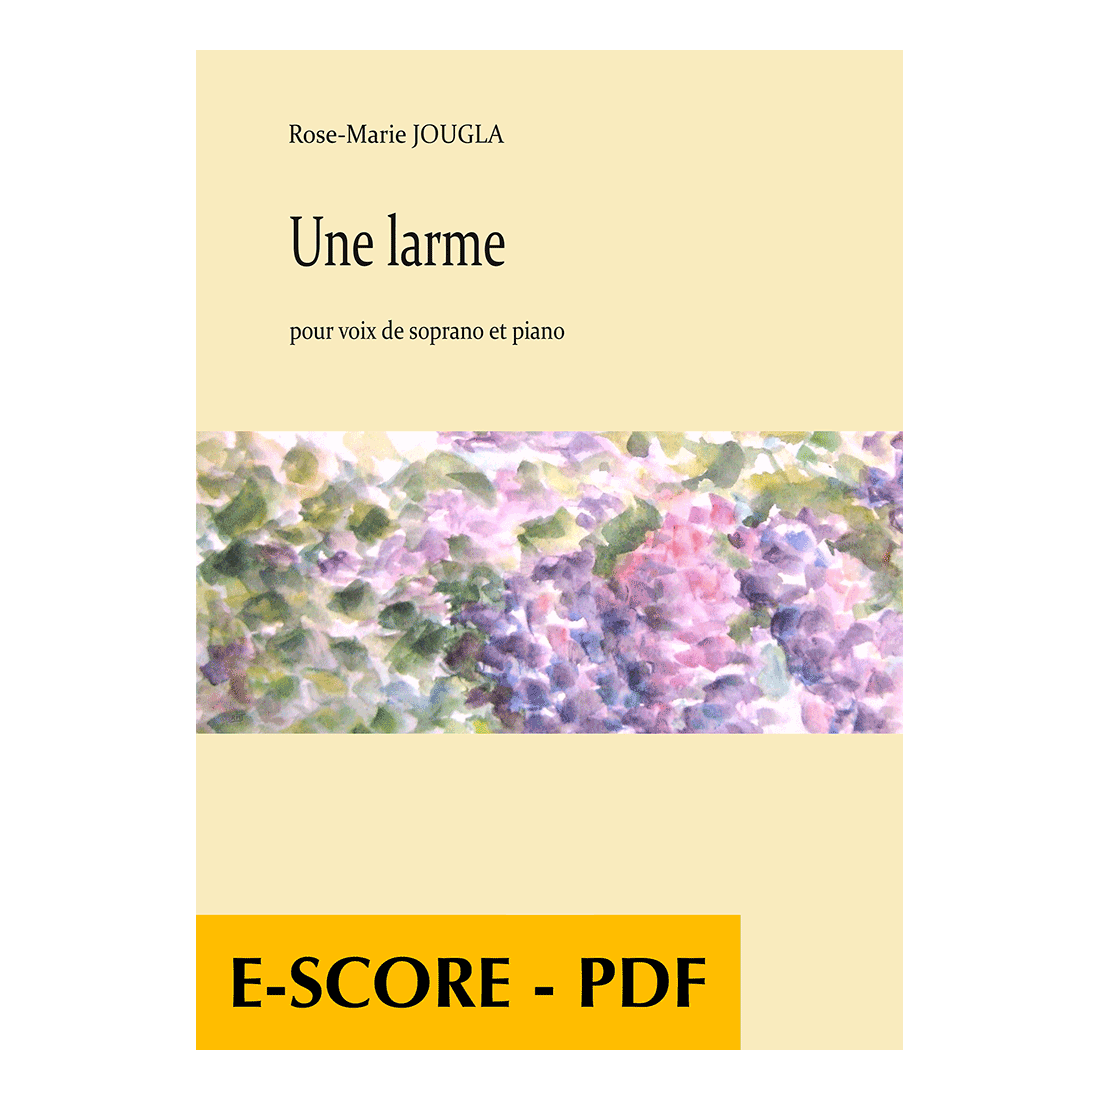 Une larme for soprano and piano - E-score PDF